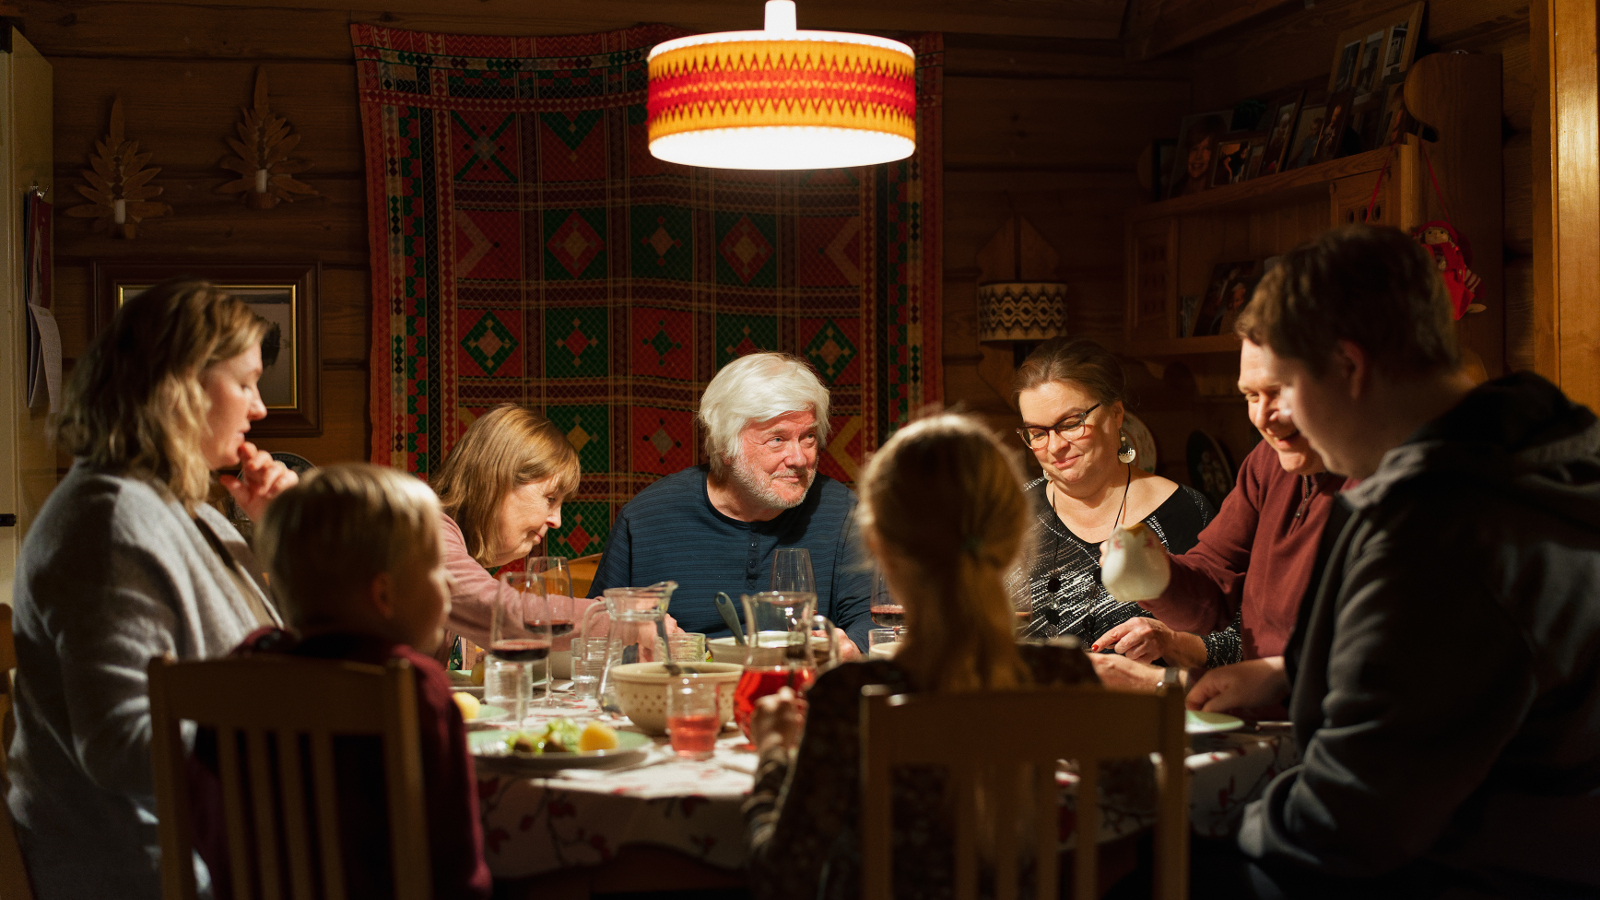 Kuvassa on keskellä pöydän ääressä vaalea hiuksinen vanhempi mies ja ympärillä eri-ikäisiä henkilöitä kuusi ja yksi lapsi syömässä.  Taustalla oleva seinä on ruskea.